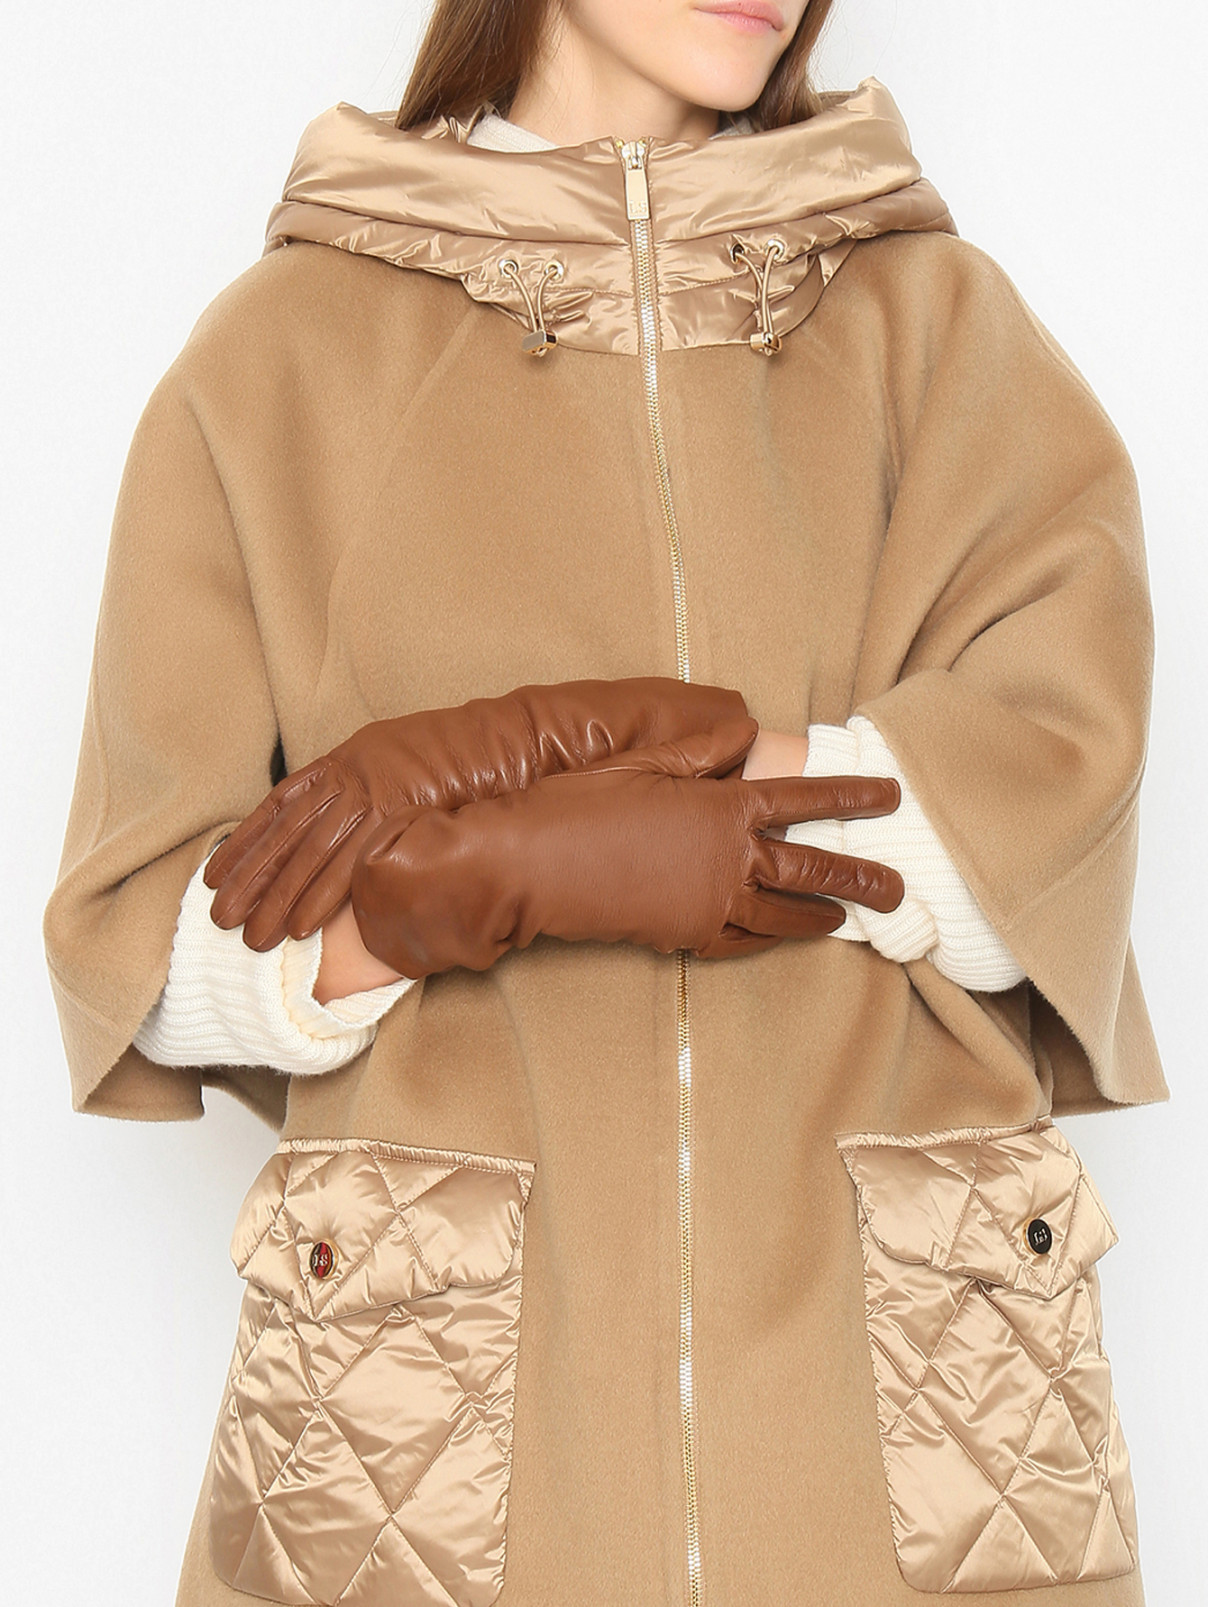 Брендовые перчатки для зимы: защита от холода и стиль в одном решении